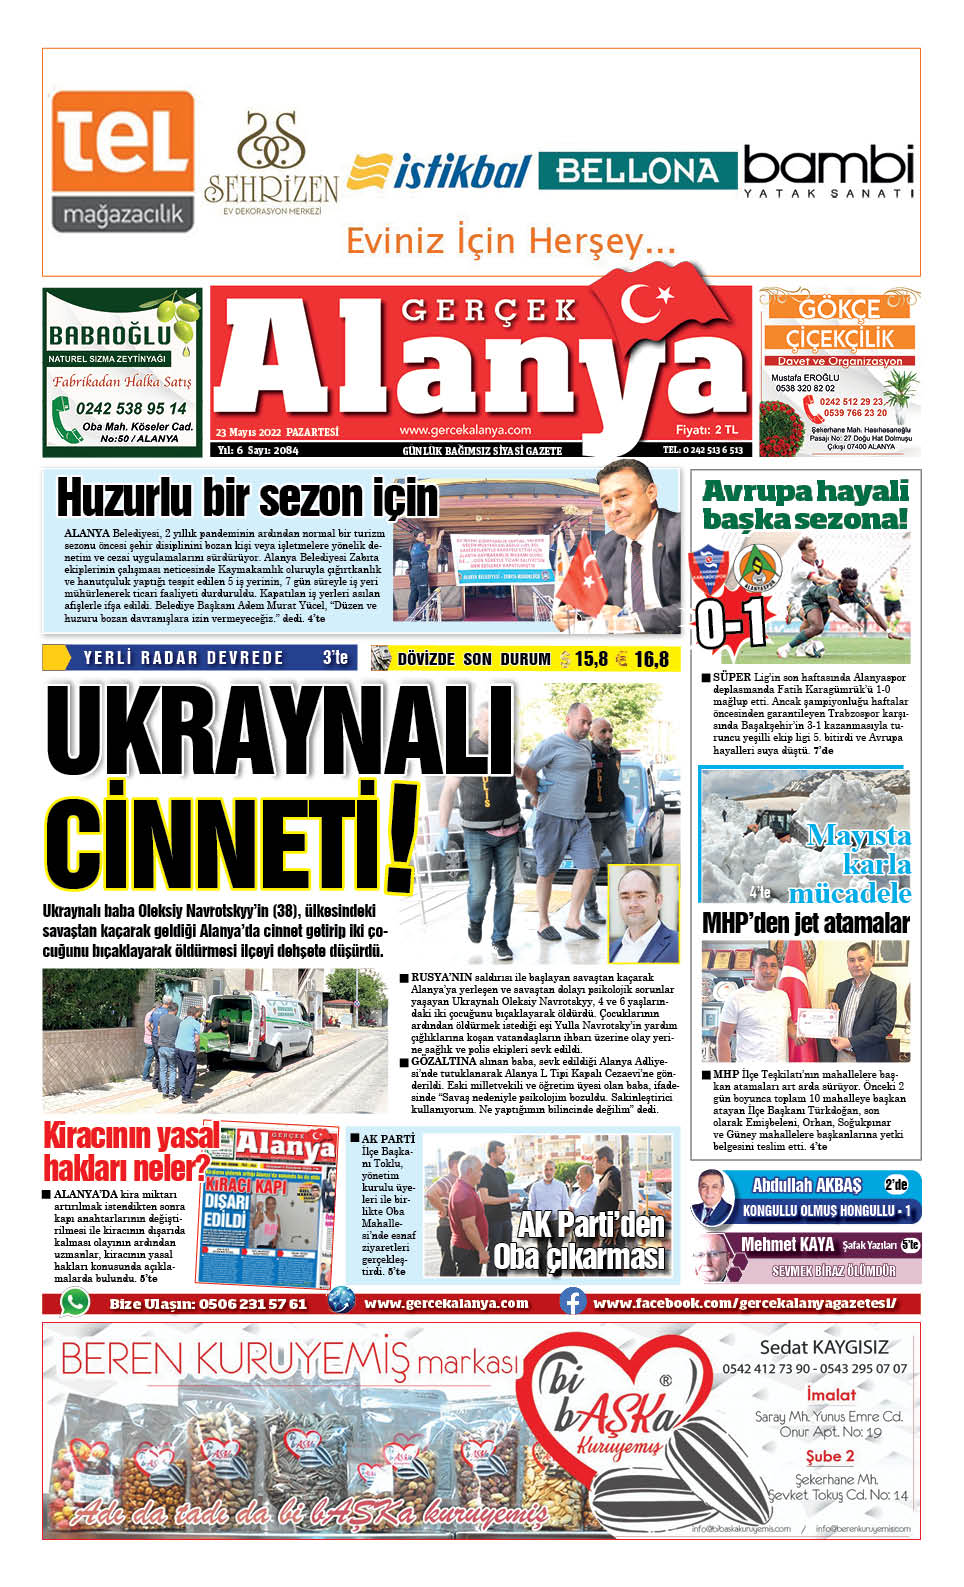 Gerçek Alanya Gazetesi - 23.05.2022 Manşeti